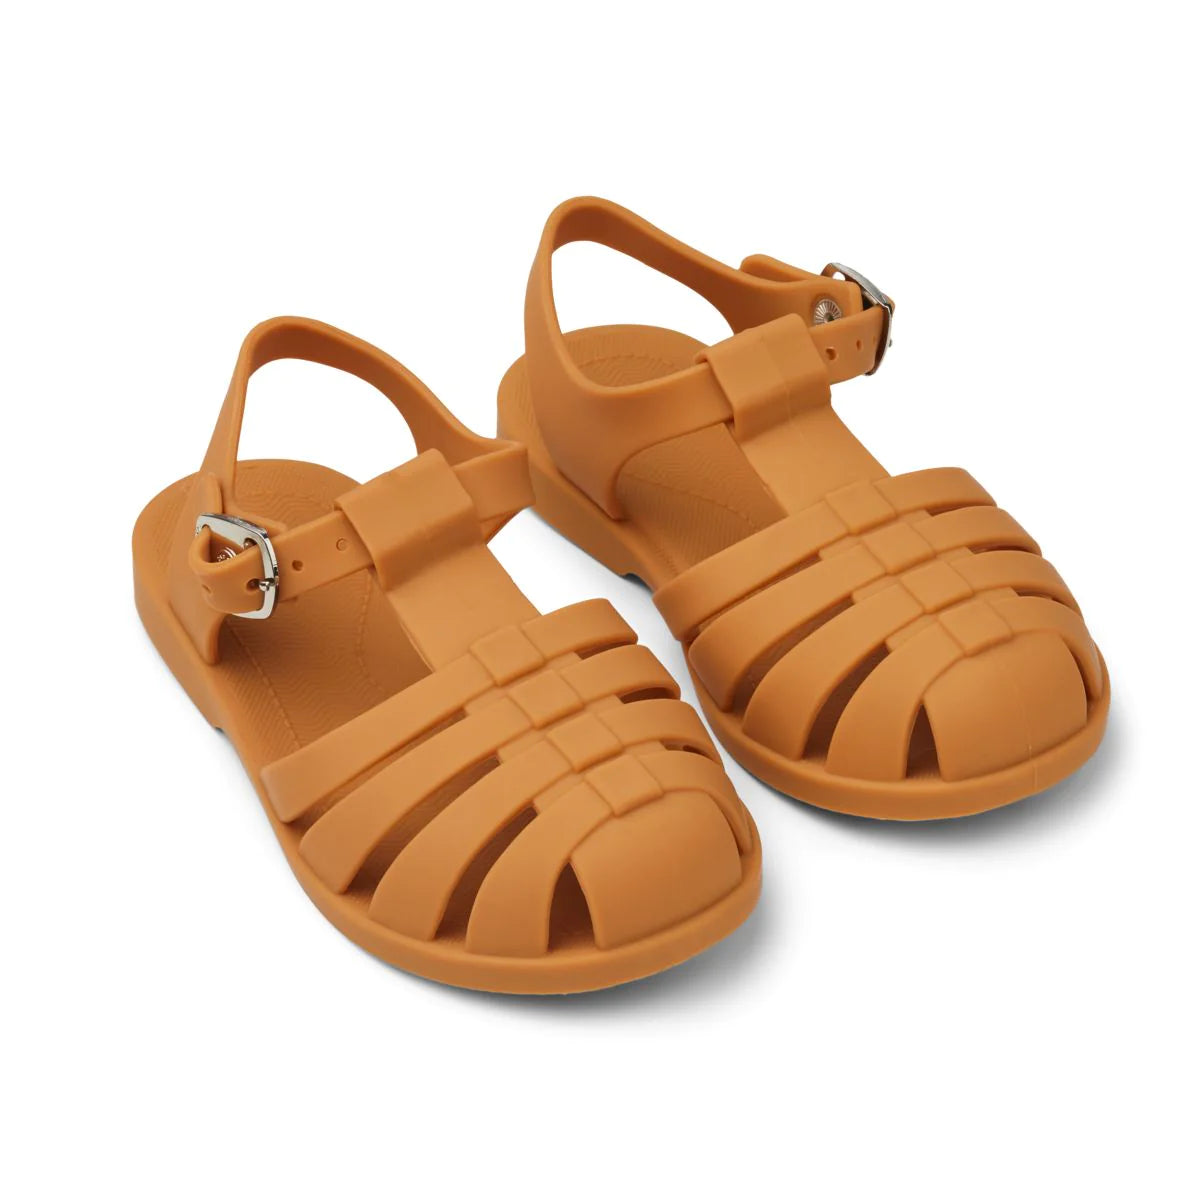 An image of Buy Liewood Bre Beach Sandals - Summer Kids Sandals Mustard / 23